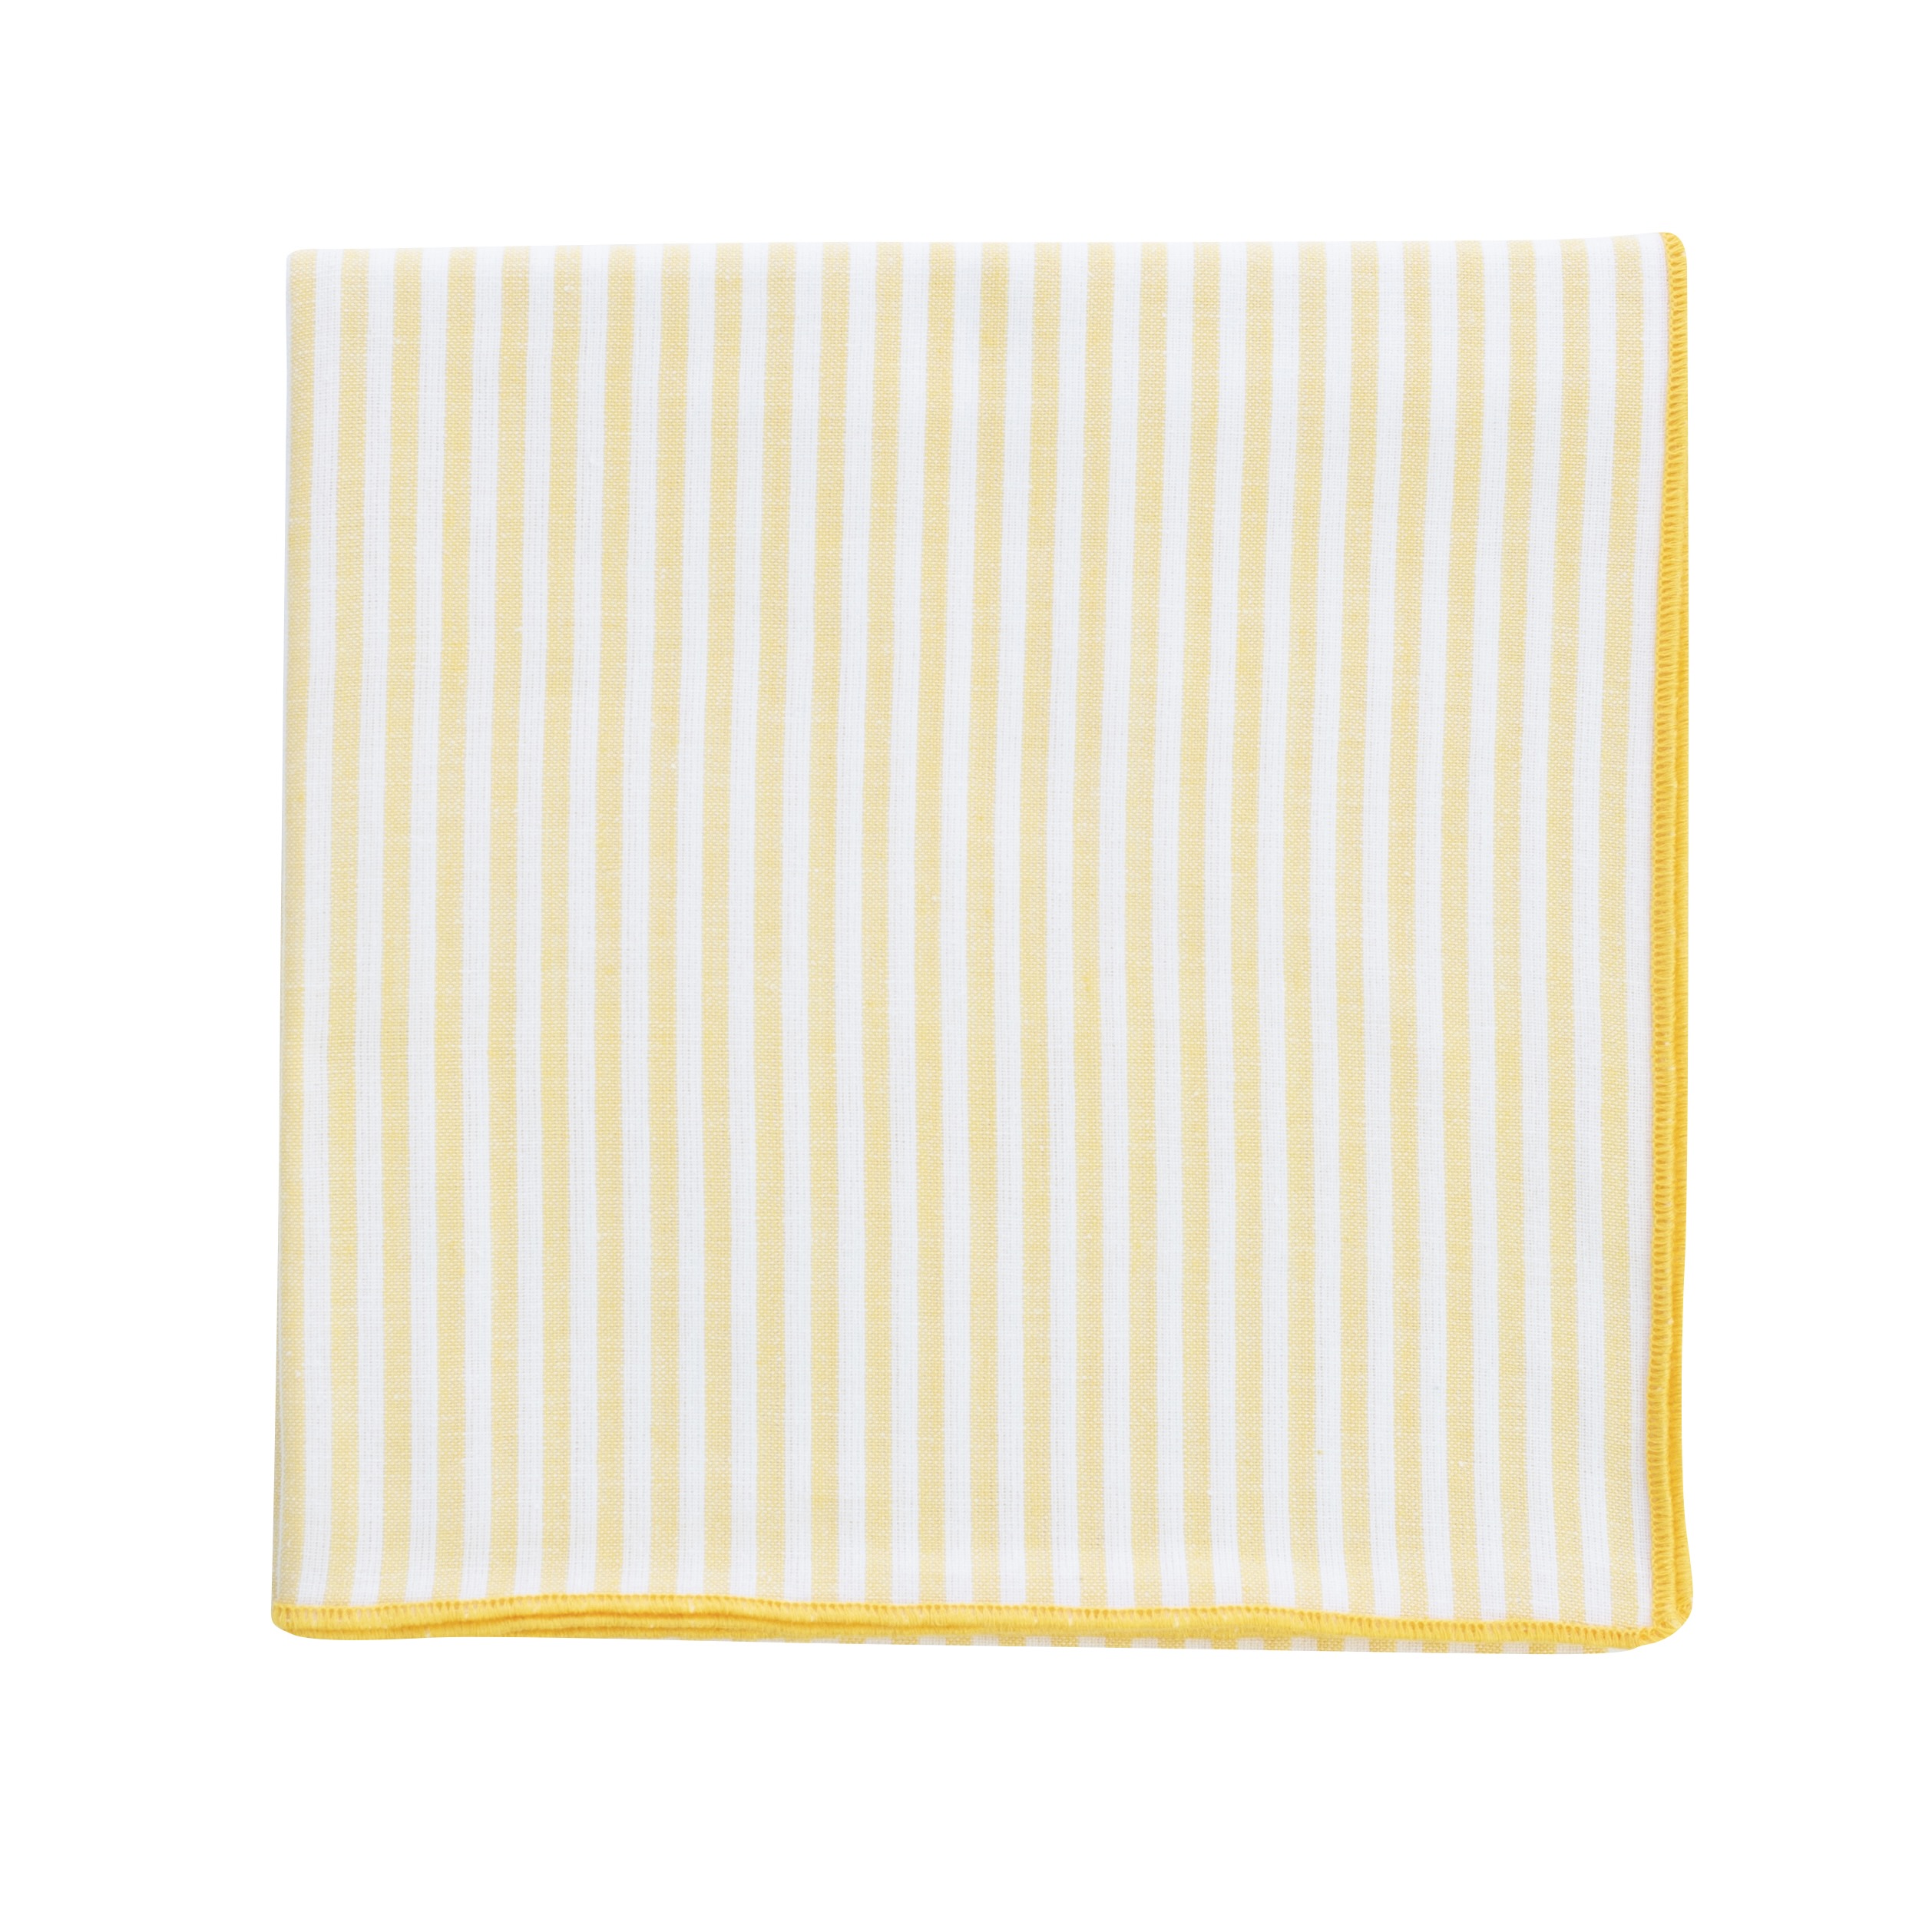 Elli Tischdecke 100 x 100 cm gelb-weiß, Streifen 0,5 cm   